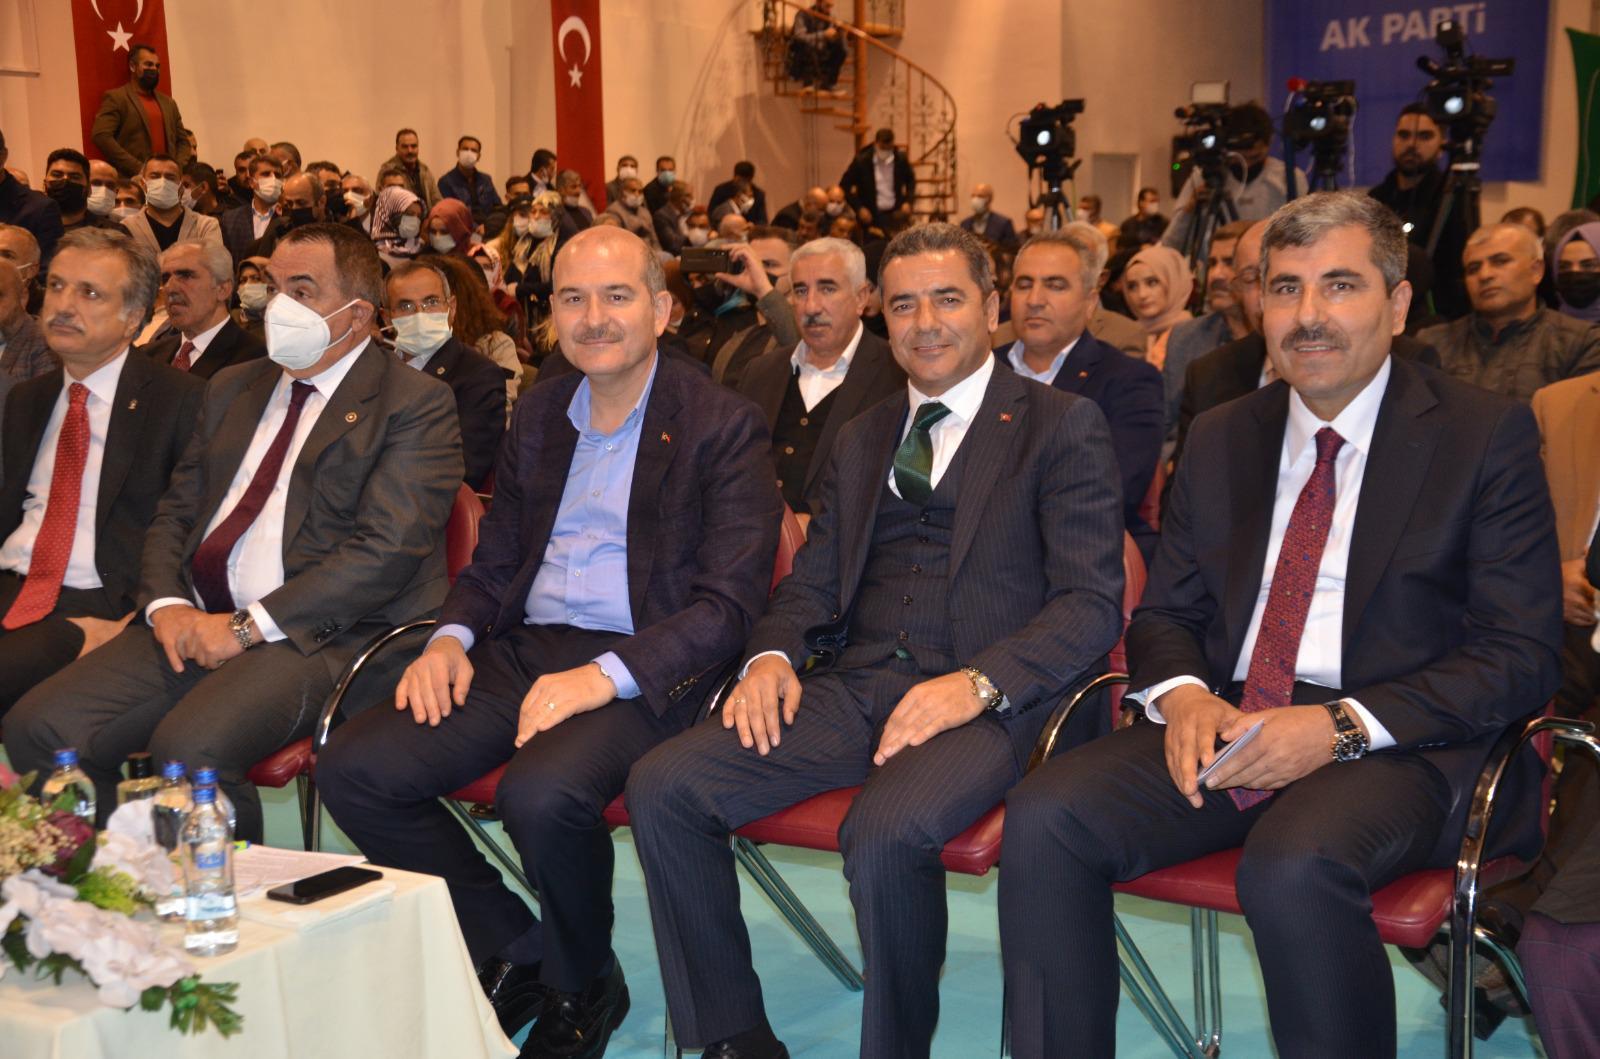 İçişleri Bakanı Süleyman Soylu AK Parti ile CHP arasındaki puan farkını açıkladı